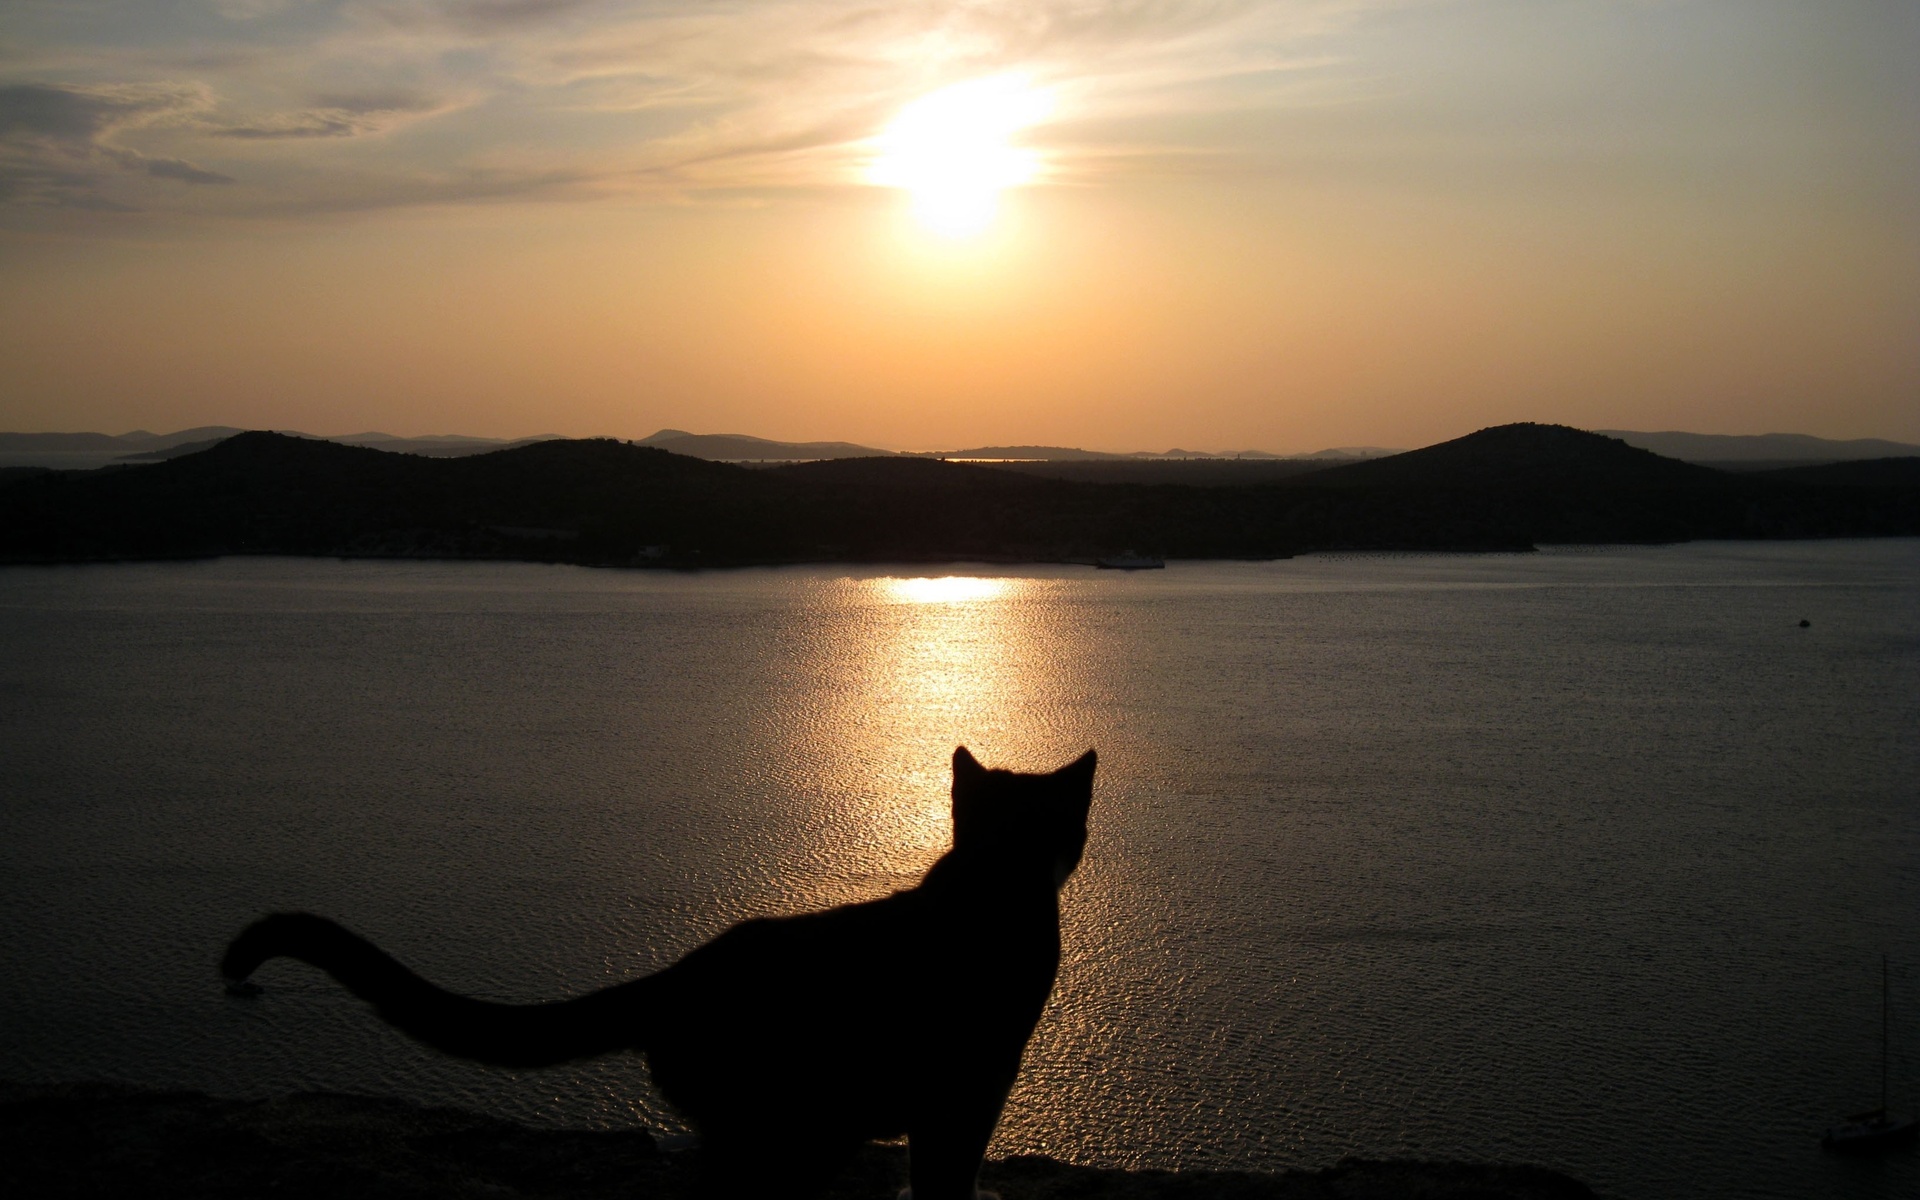 Котик на закате